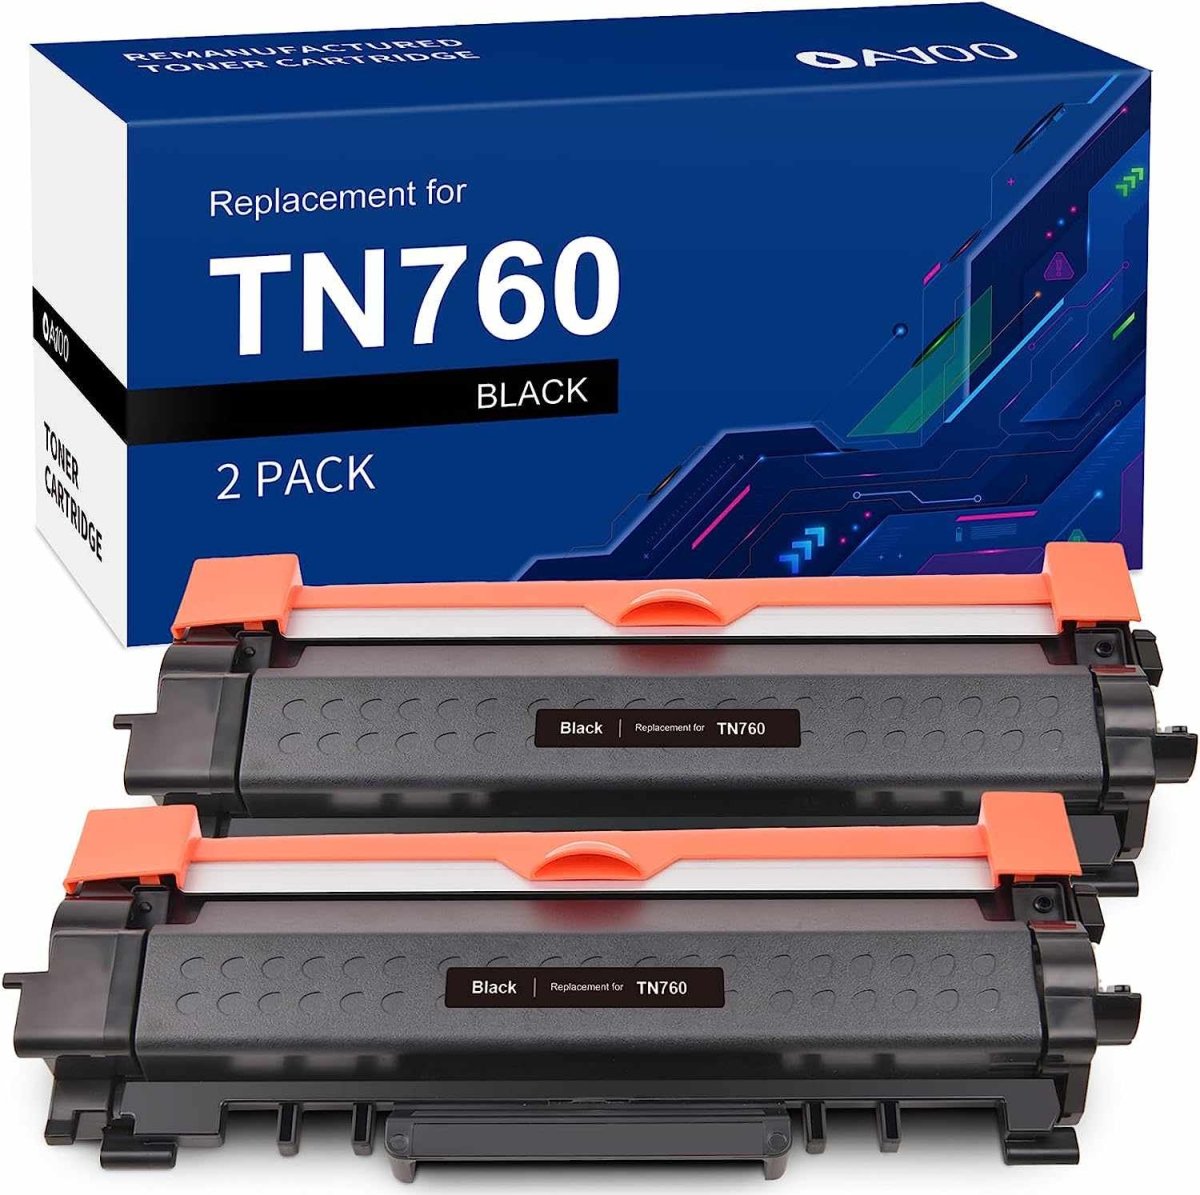 Remanufactured Brother TN760 Toner Cartridges (Black, 2-Pack) - Linford Office:Printer Ink & Toner Cartridge